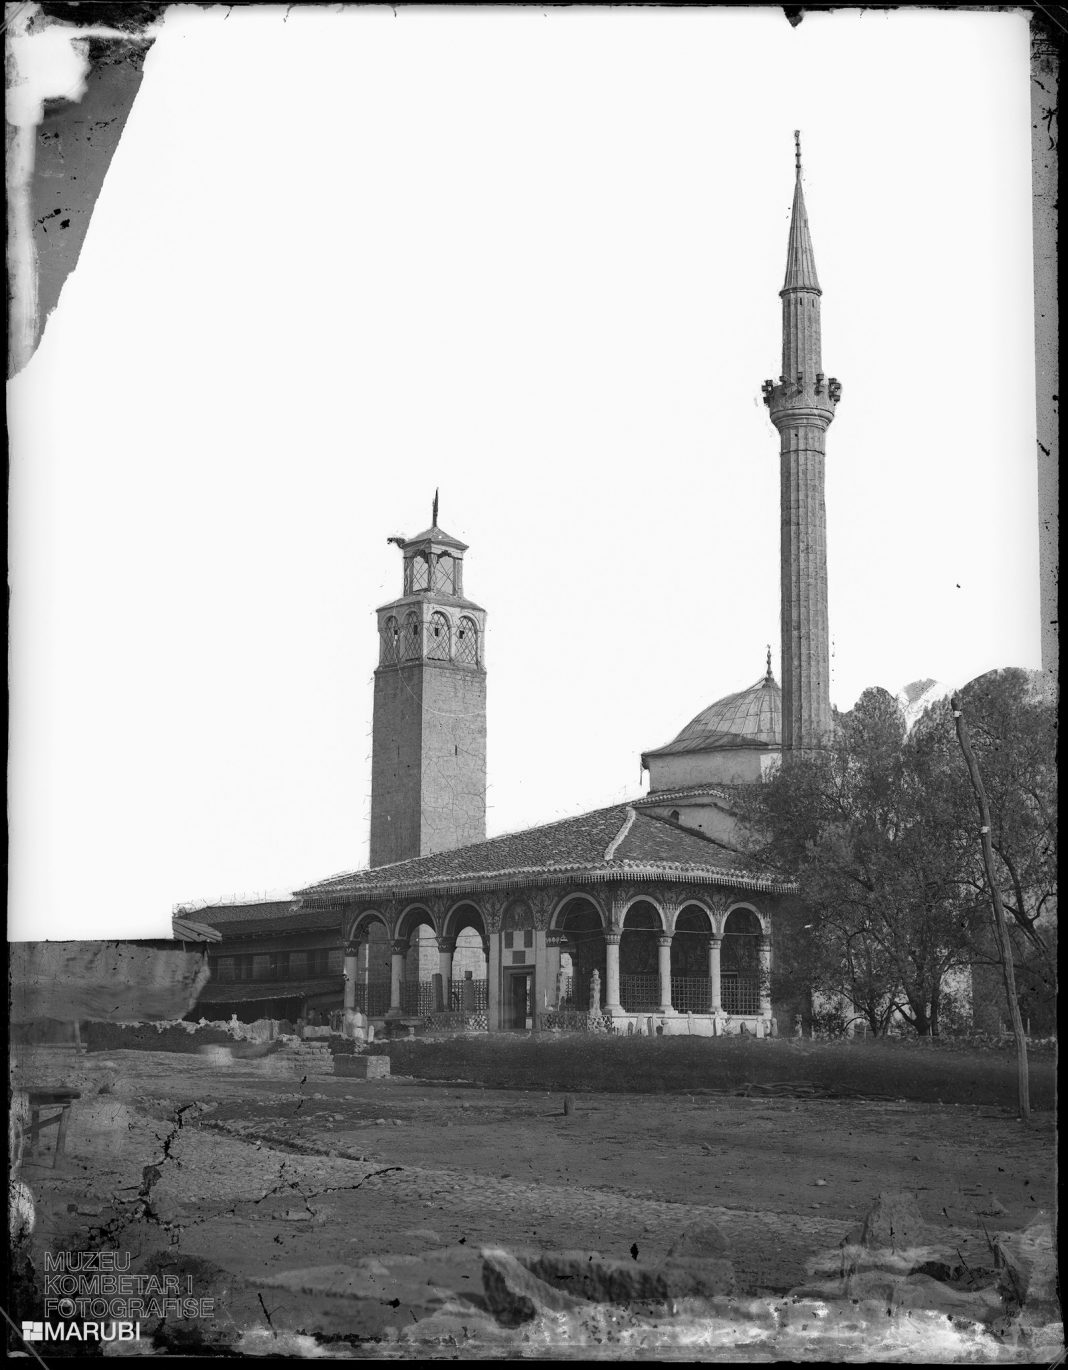 Muzeu “Marubi” uron me foton më të vjetër të Tiranës, shkrepur nga Pietro Marubbi, ku dallohet Xhamia e Et’hem Beut dhe Kulla e Sahatit